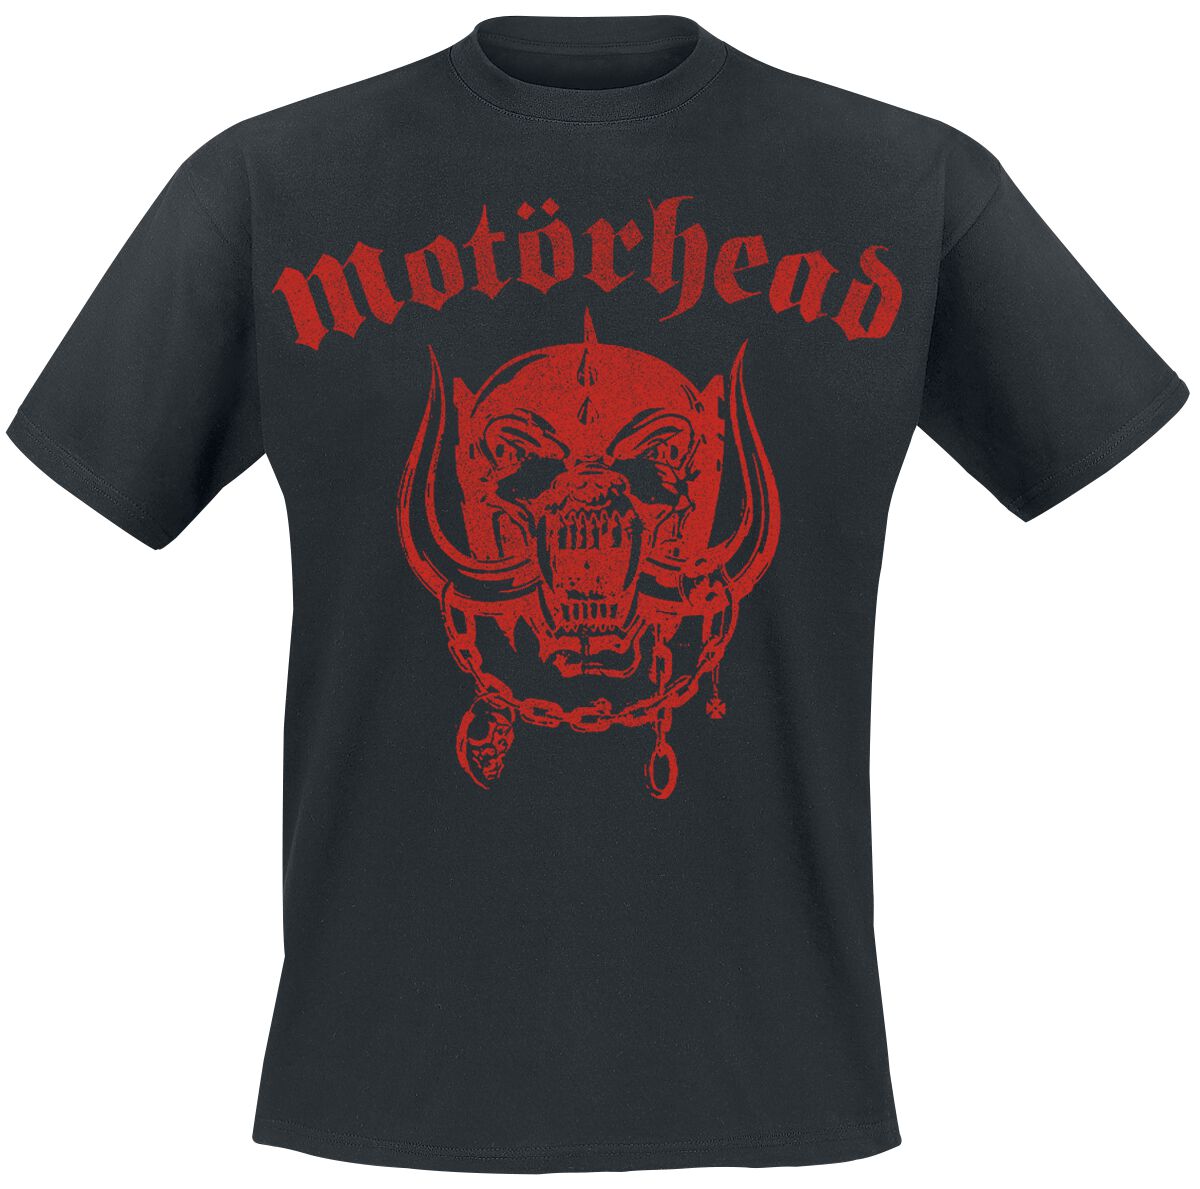 Motörhead T-Shirt - Allover - S bis M - für Männer - Größe S - schwarz  - Lizenziertes Merchandise!